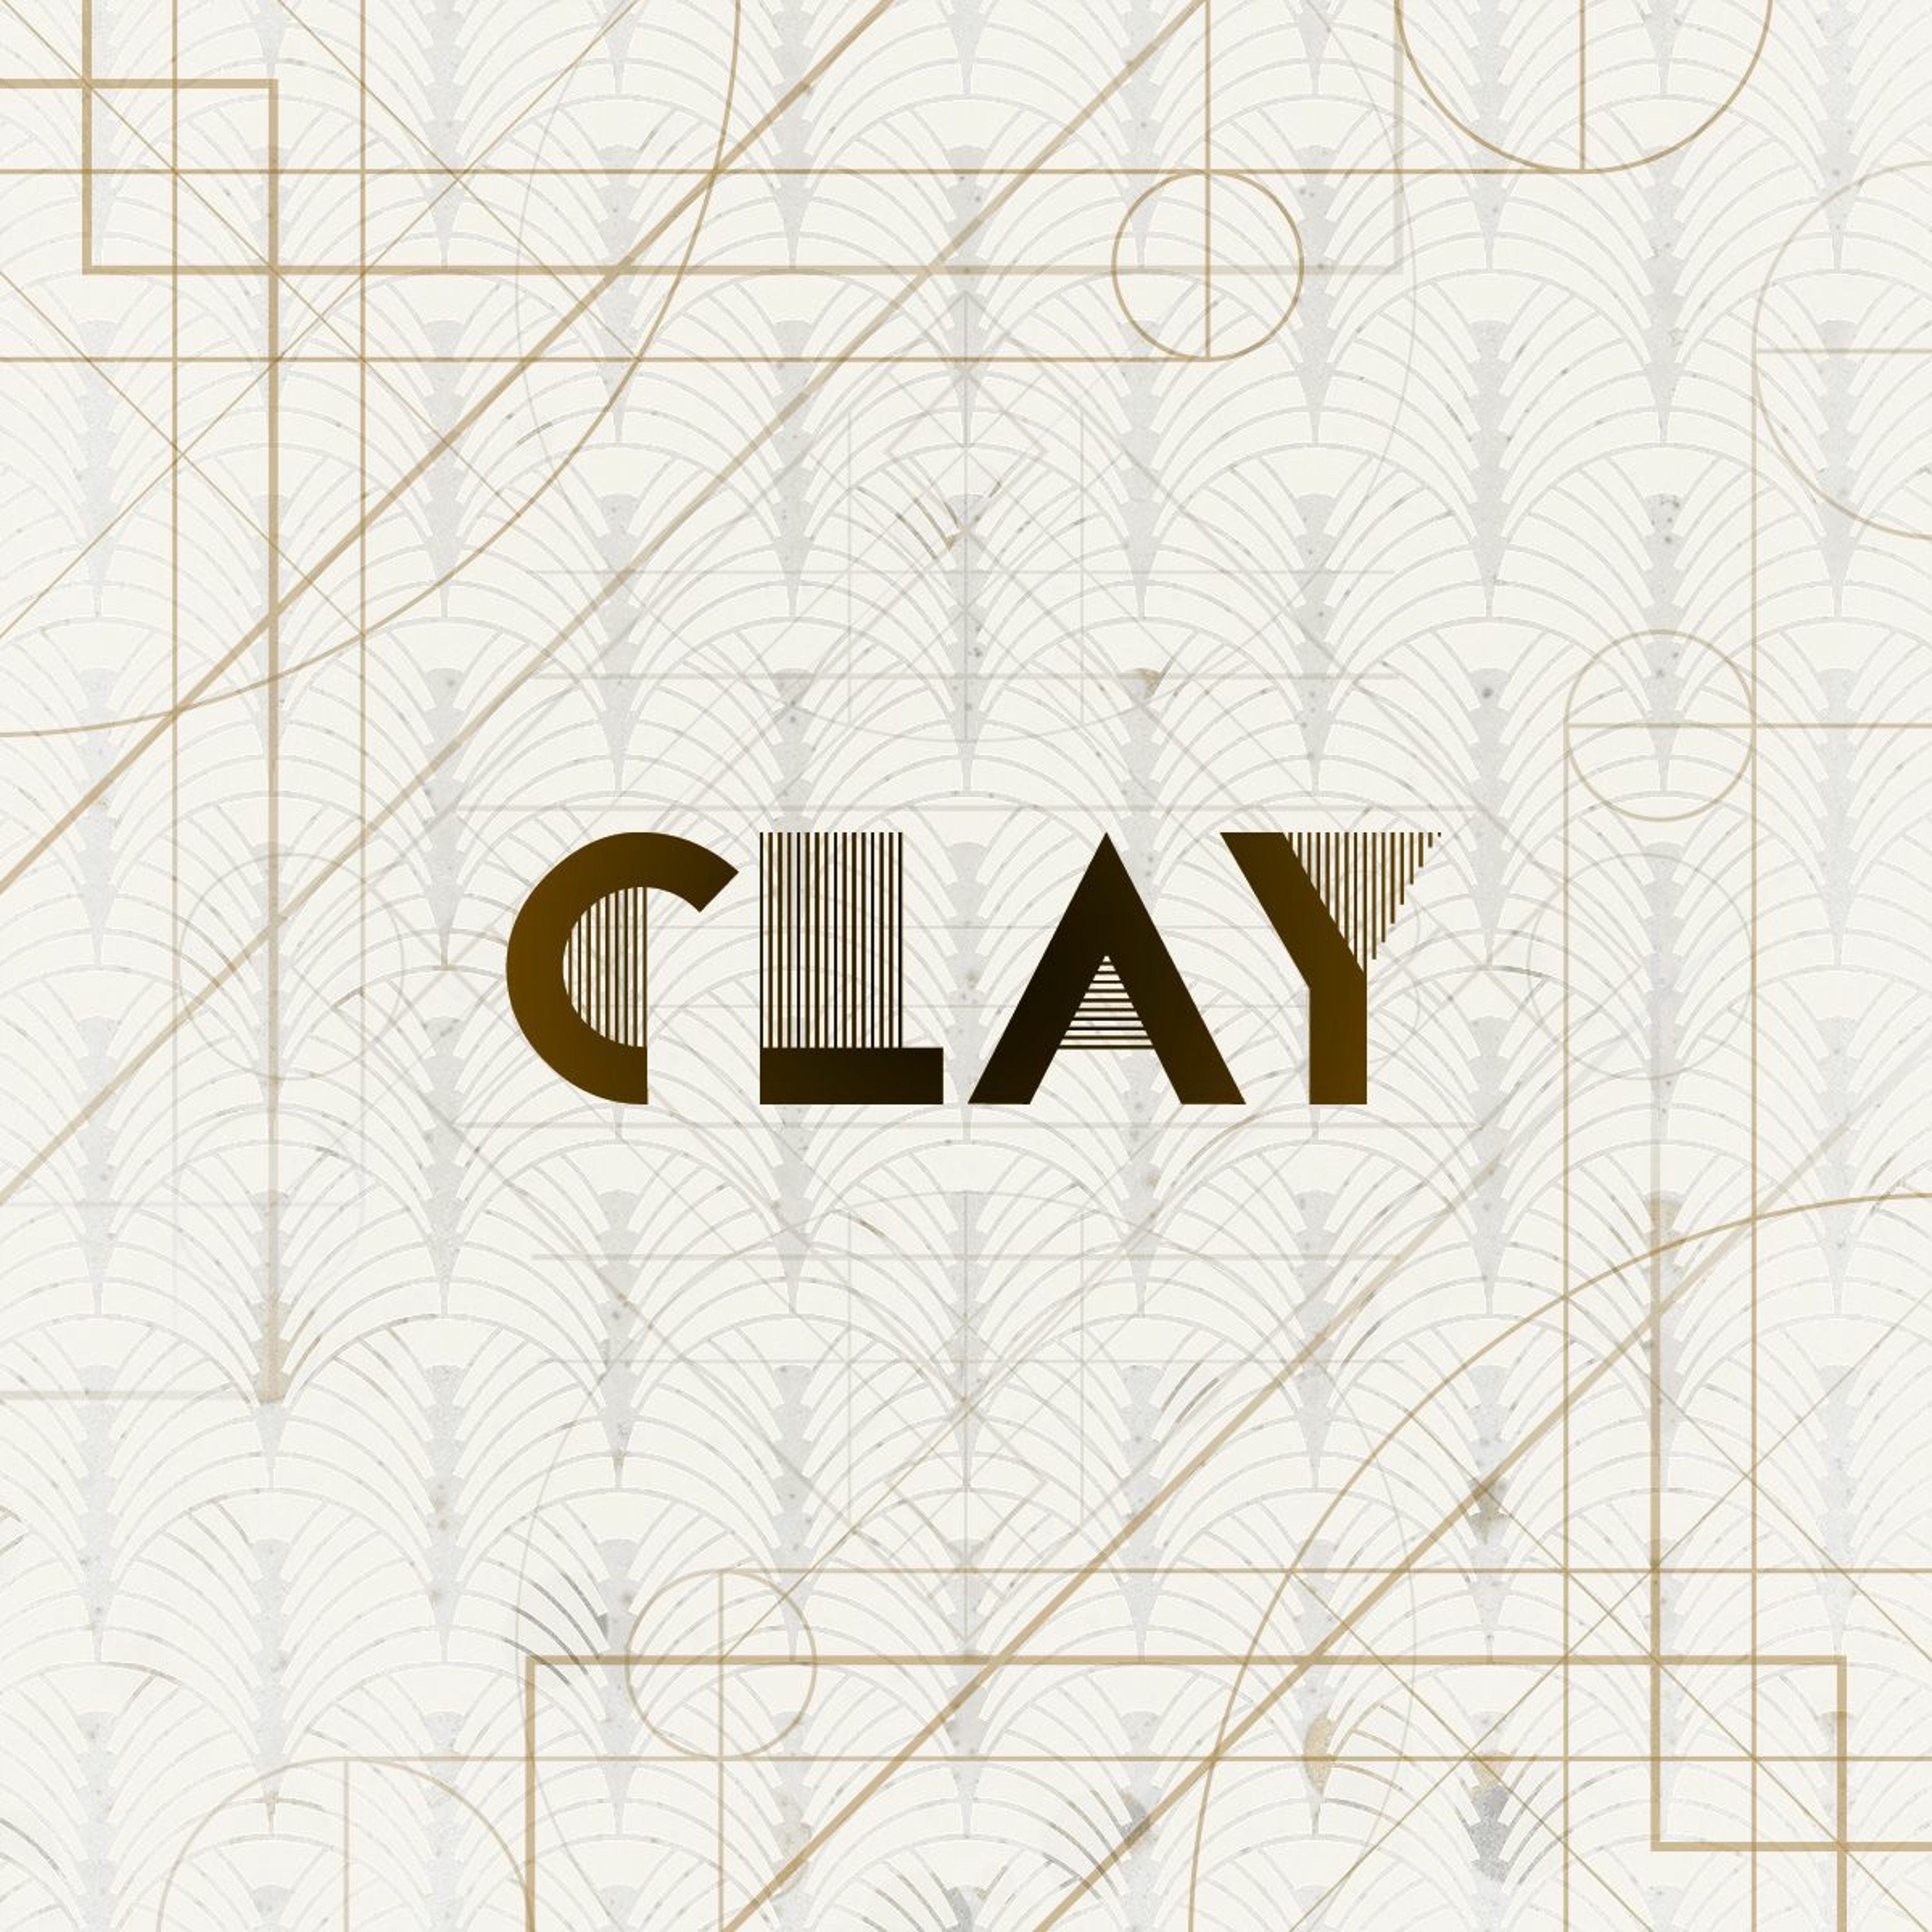 ’Clay’ / Stuart Argue